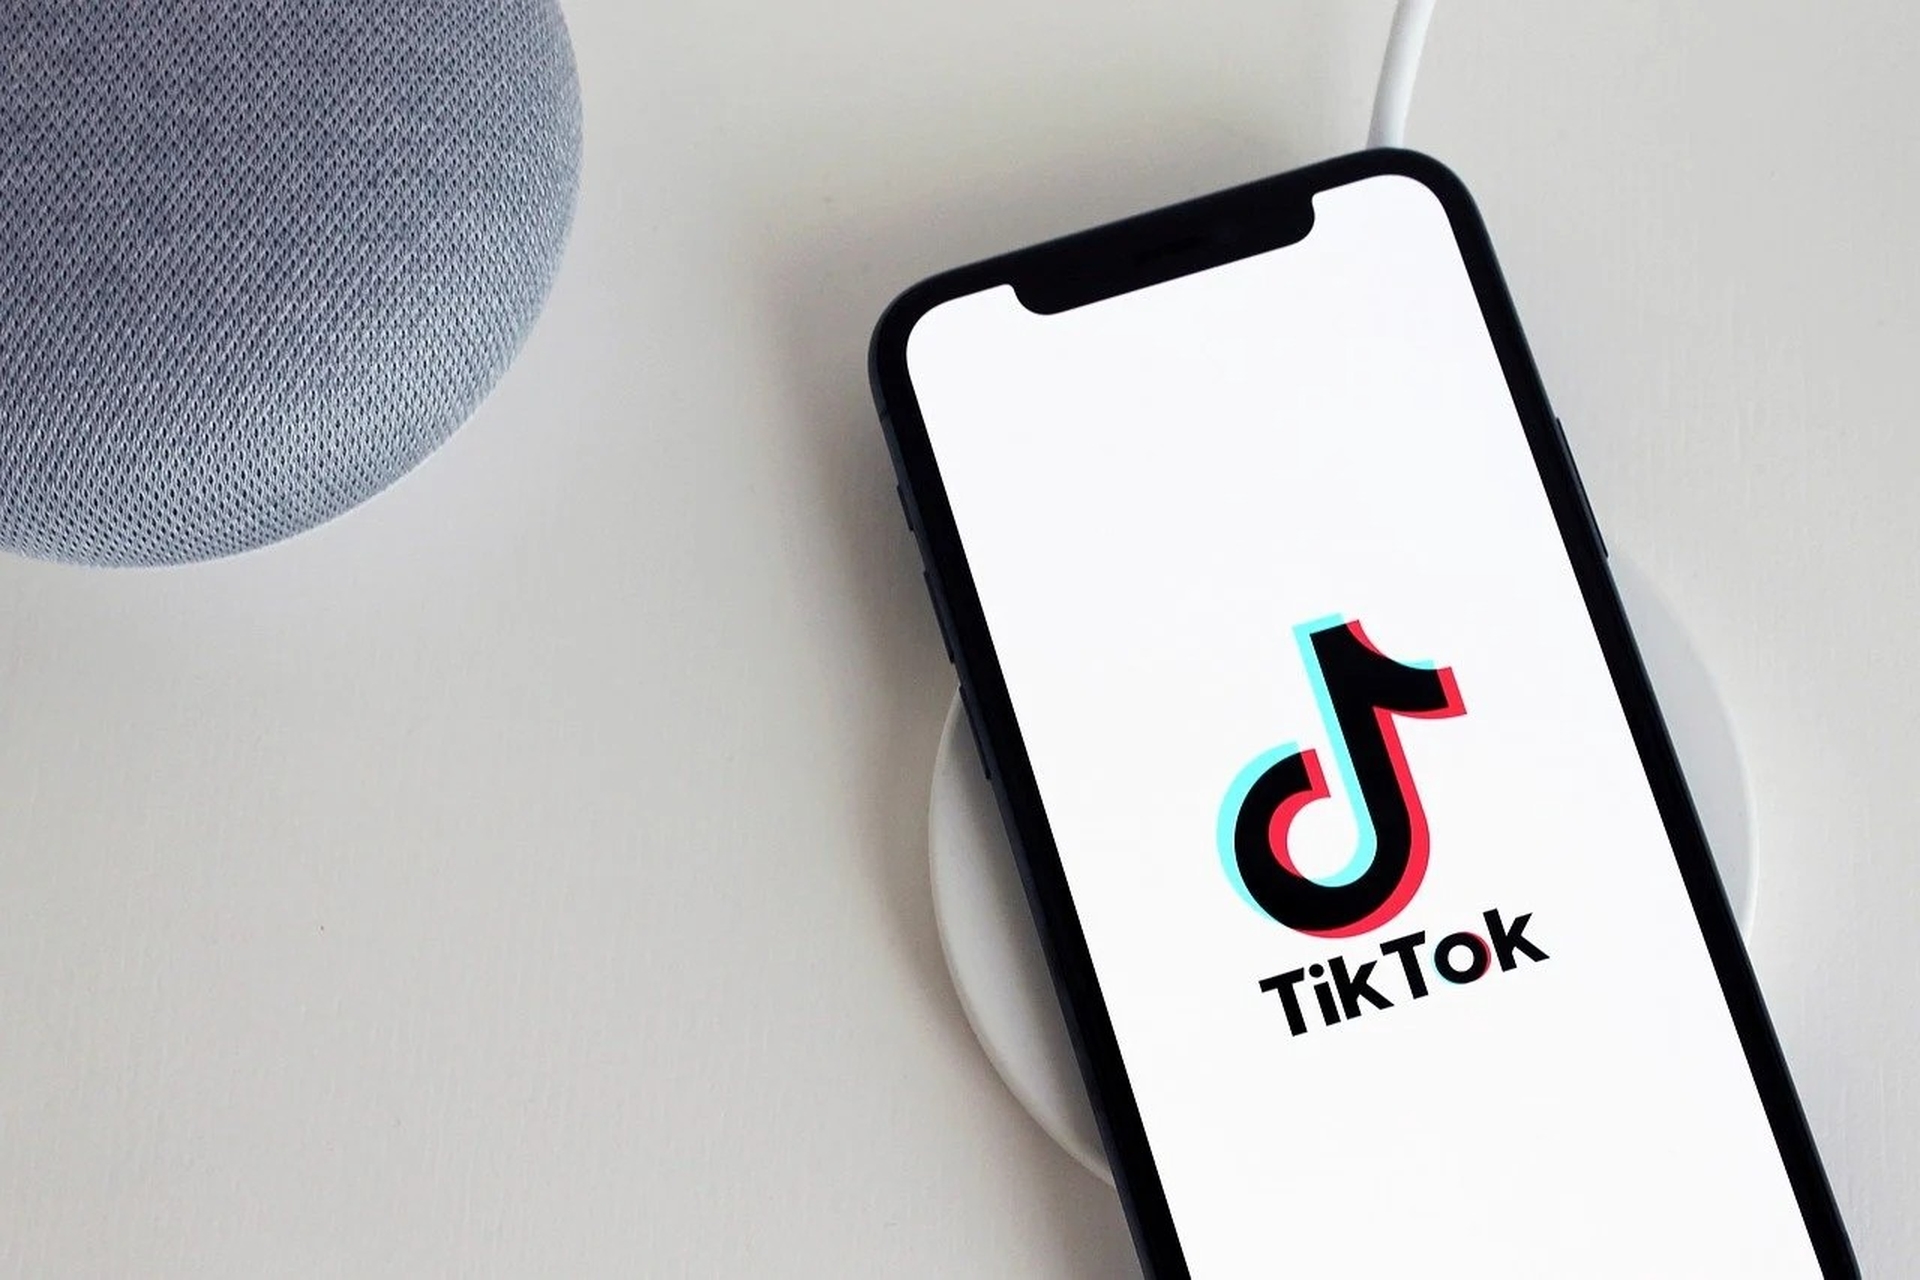 W tym artykule omówimy, jak uzyskać filtr blasku TikTok, abyś mógł korzystać z tego nowego filtra i robić z nim świetne zdjęcia.